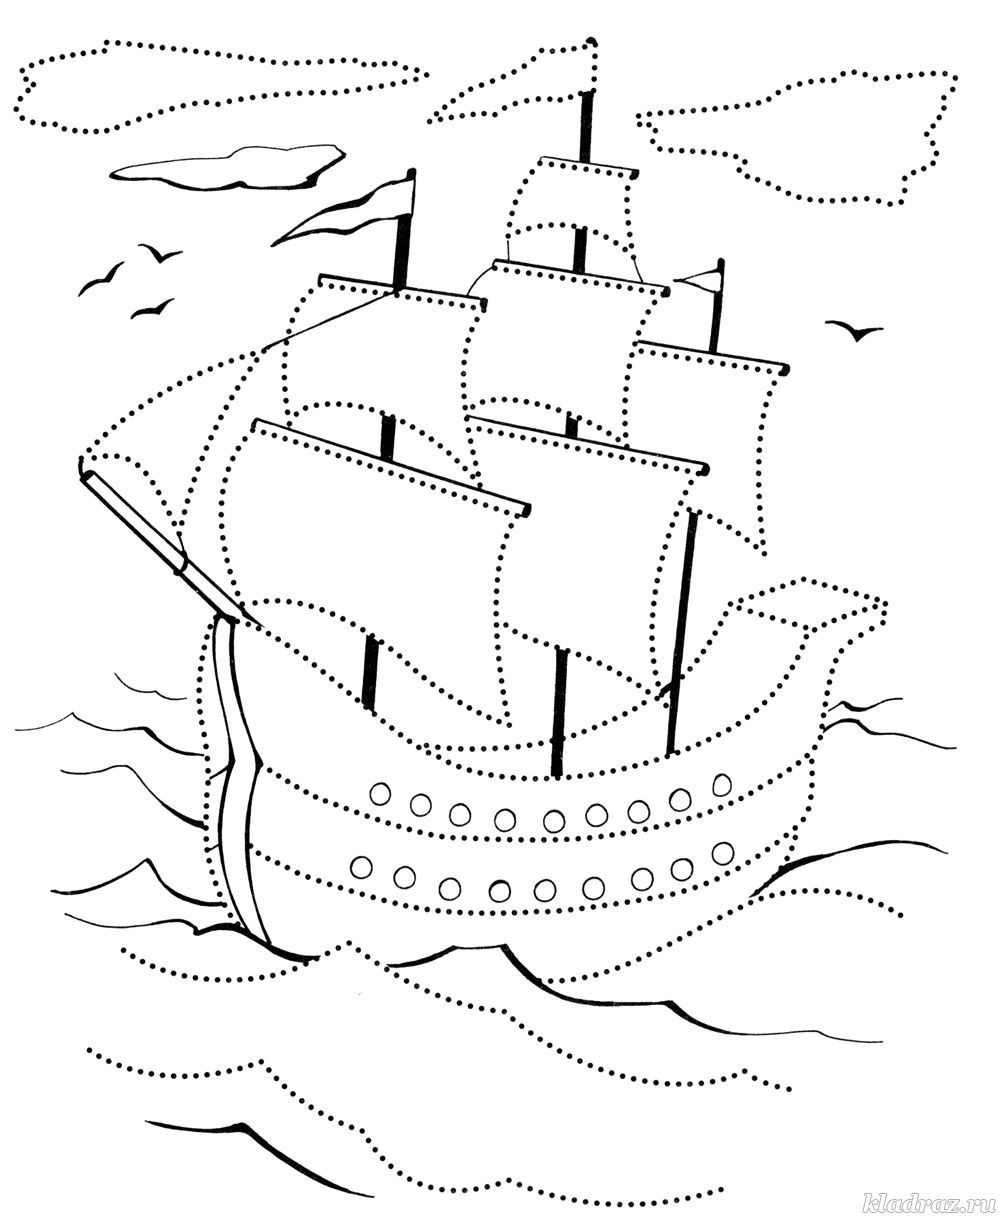 Различные раскраски для детей с изображениями кораблей и пароходов. Раскраски, картинки для детей и малышей с изображениями кораблей. Раскраски с кораблями. Скачать раскраски с кораблями, яхтами, пароходами. Раскраски для деток с корабликами. 